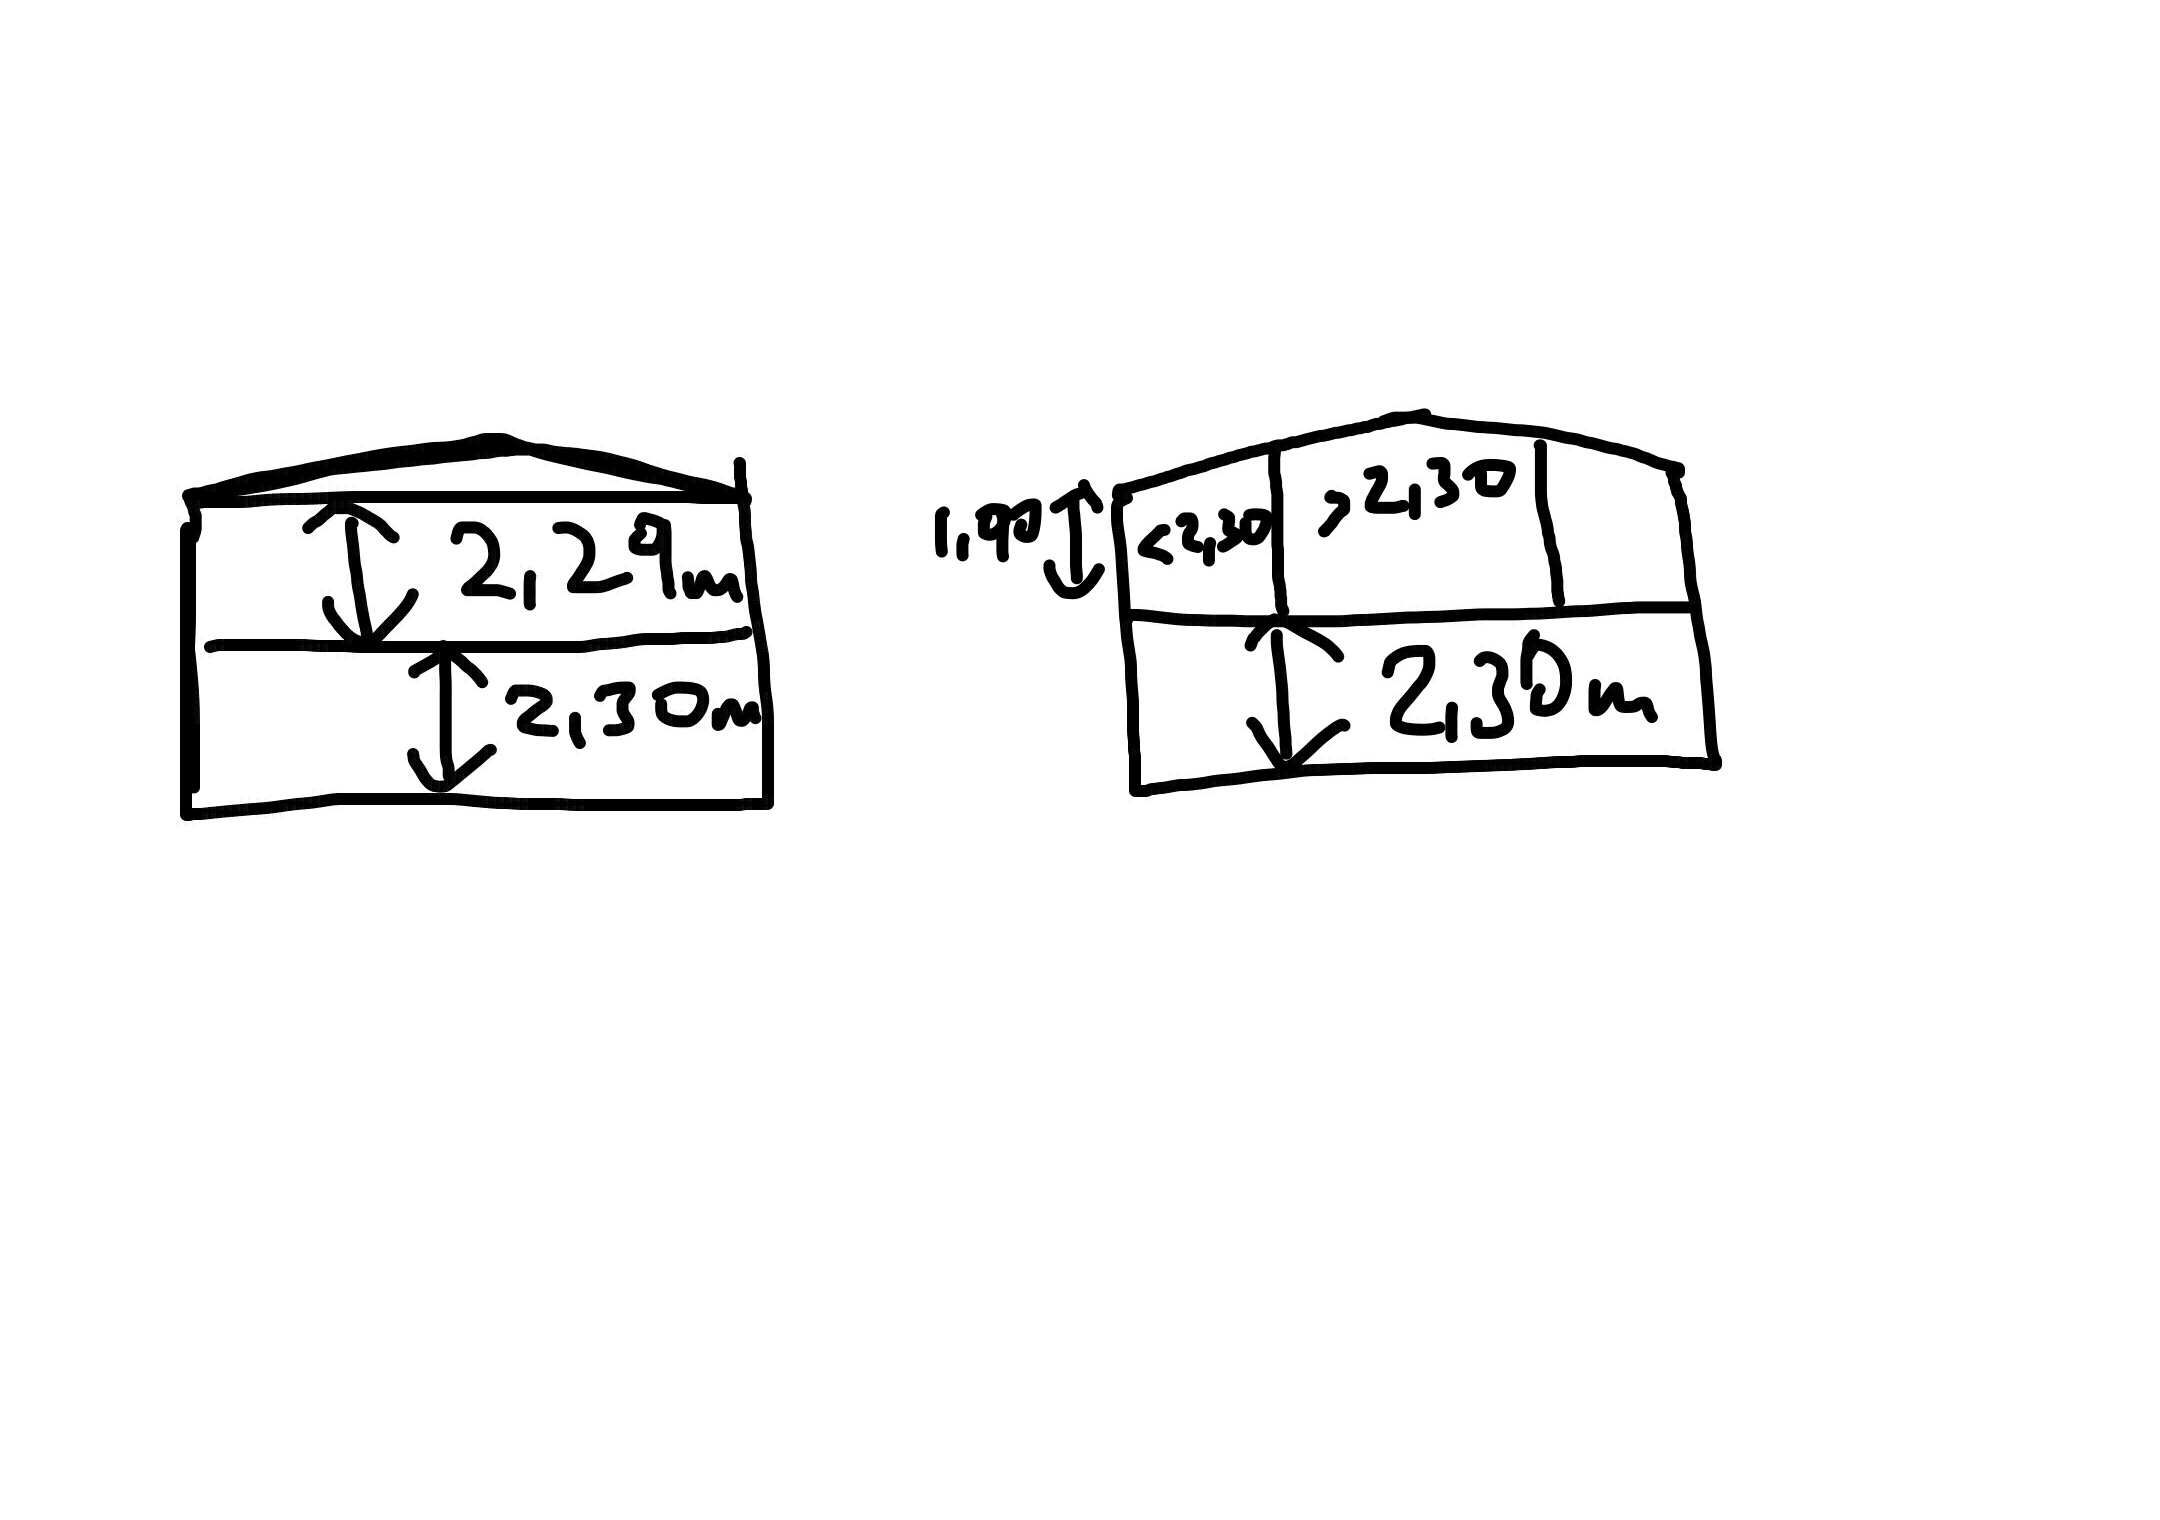 ein-vollgeschoss-erlaubt-zwei-drittel-der-flaeche-darf-min-230m-sein-471321-1.jpeg